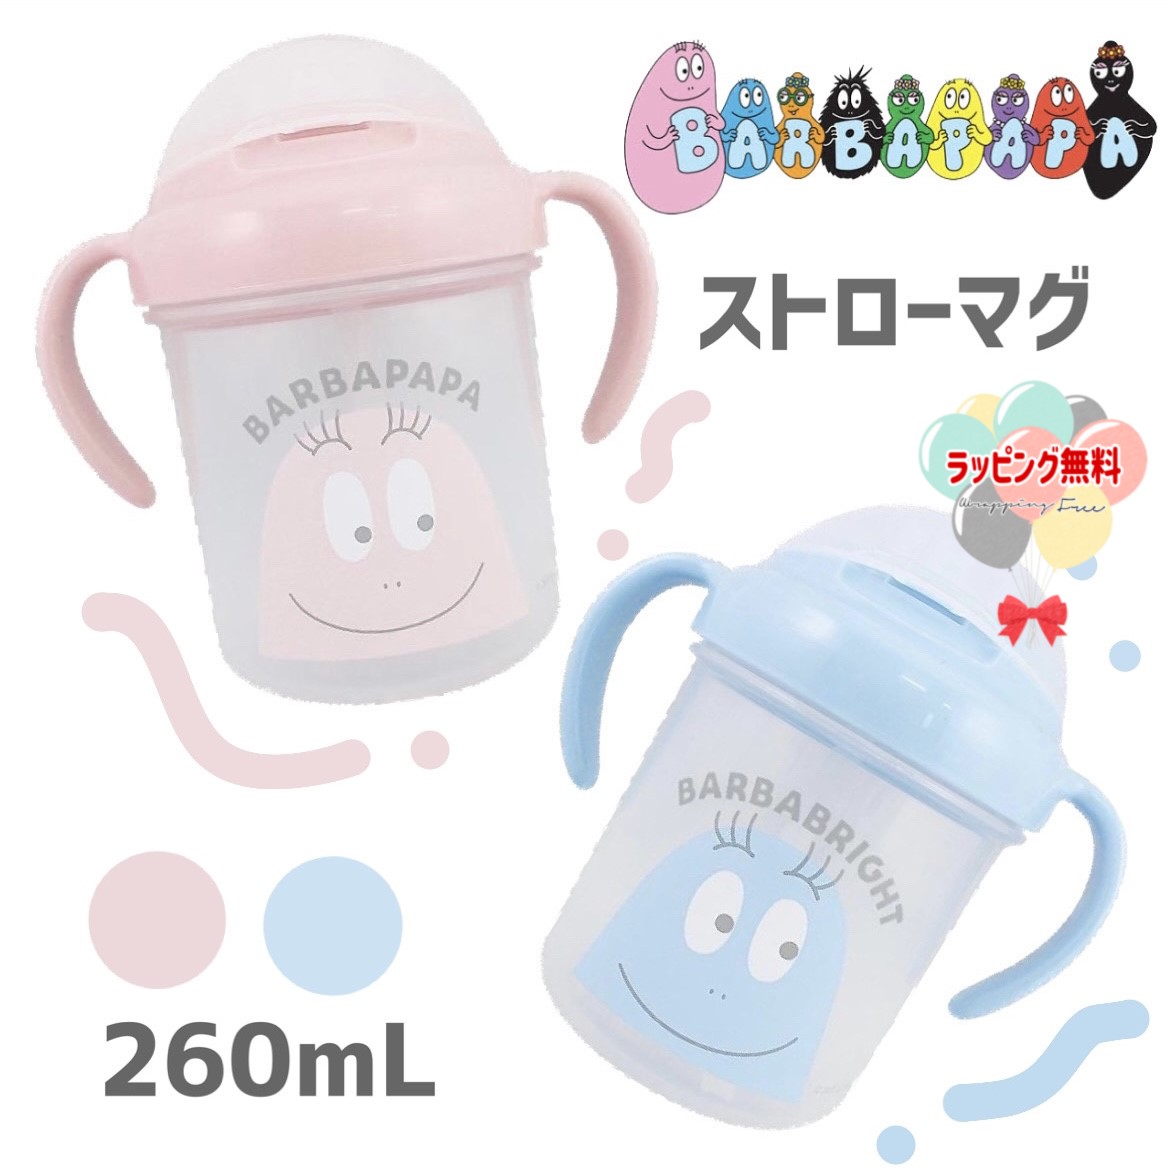 大西賢製販 バーバパパ FOR BABY おでかけ 離乳食容器 BARBAPAPA BPU-652 可愛い 赤ちゃん 出産祝い プレゼント